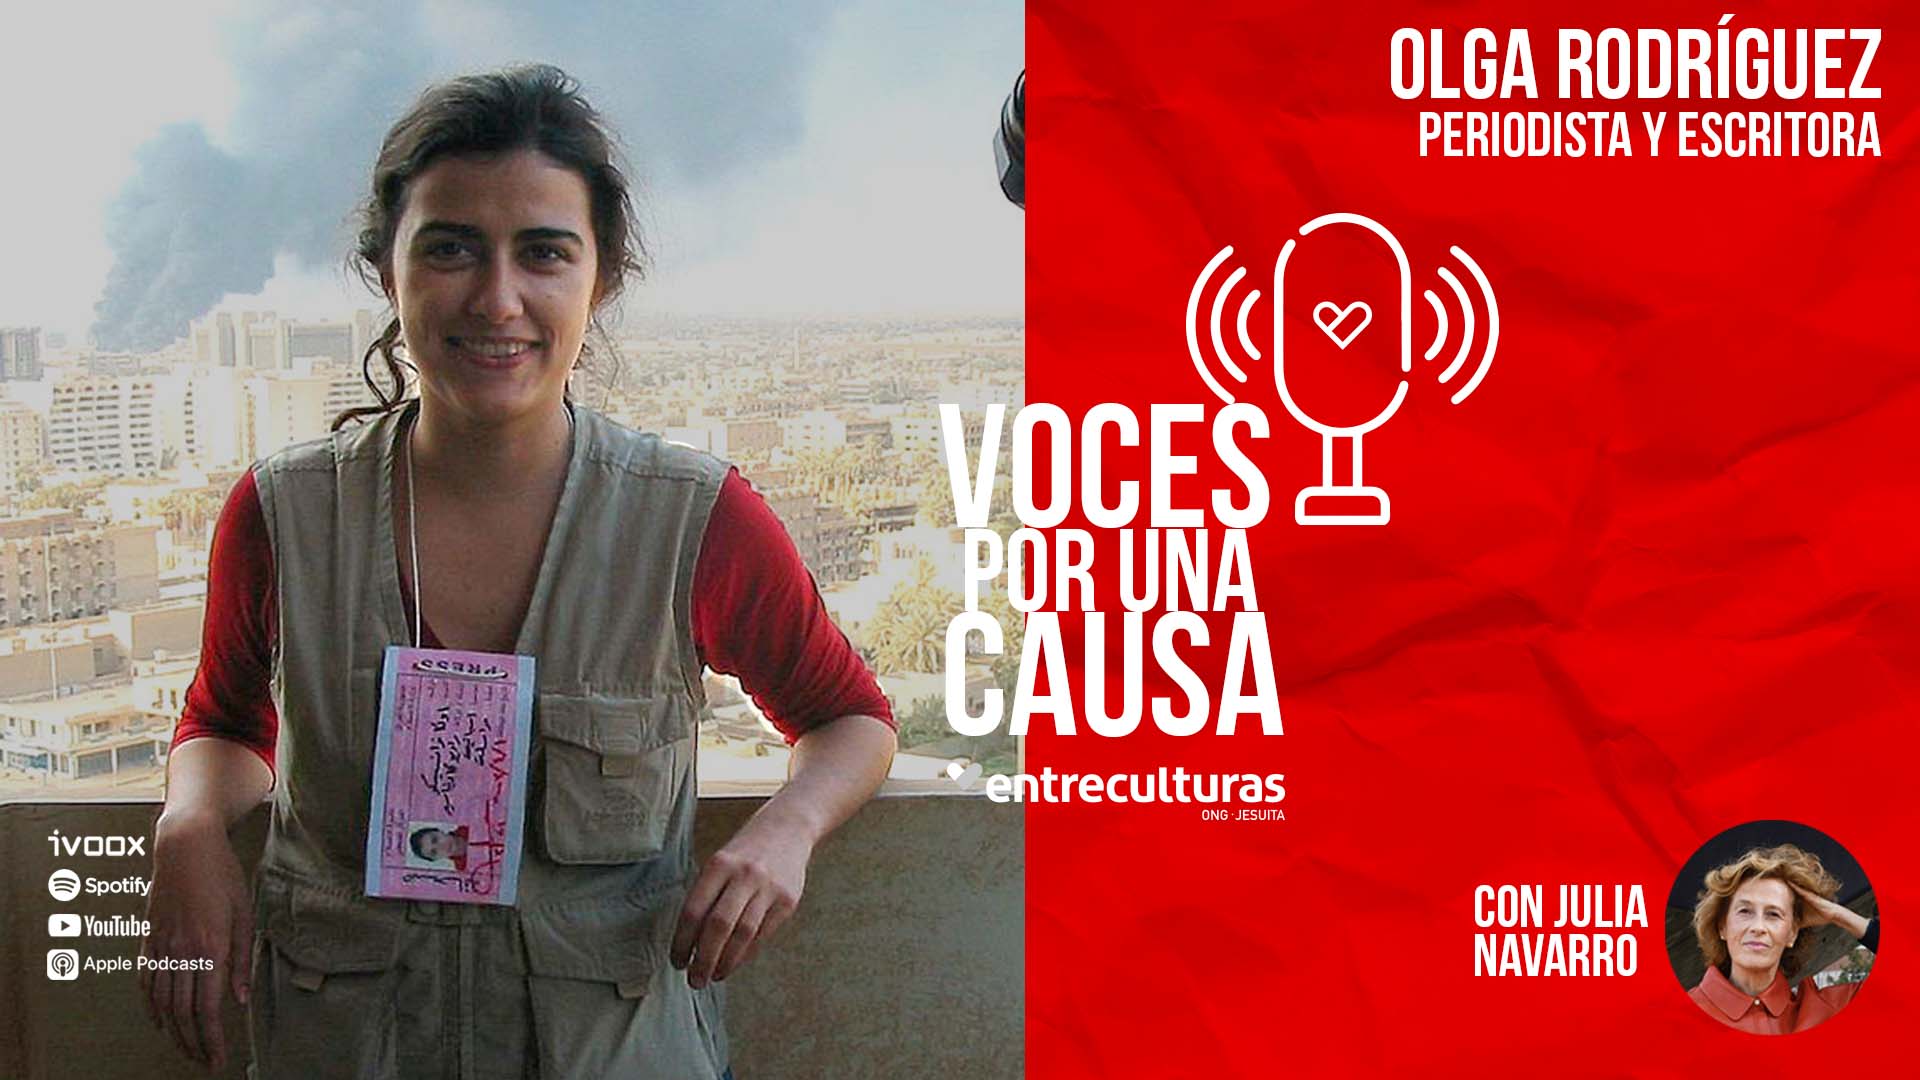 “La mayor historia que podríamos contar es el triunfo del diálogo y de la paz”, Olga Rodriguez